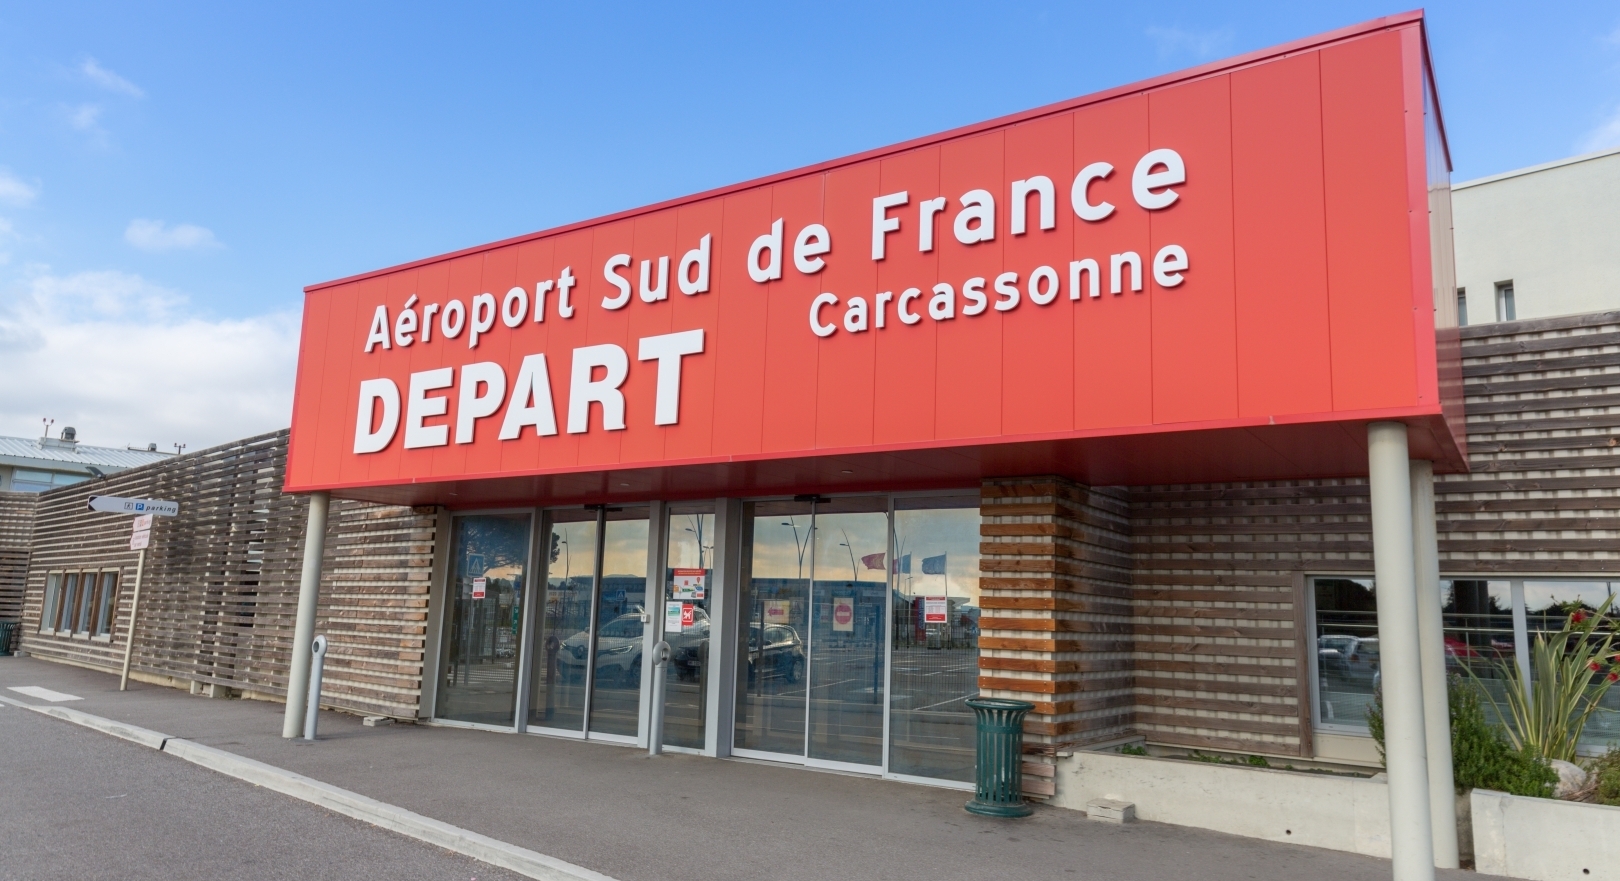 Sud de France - Carcassonne Airport